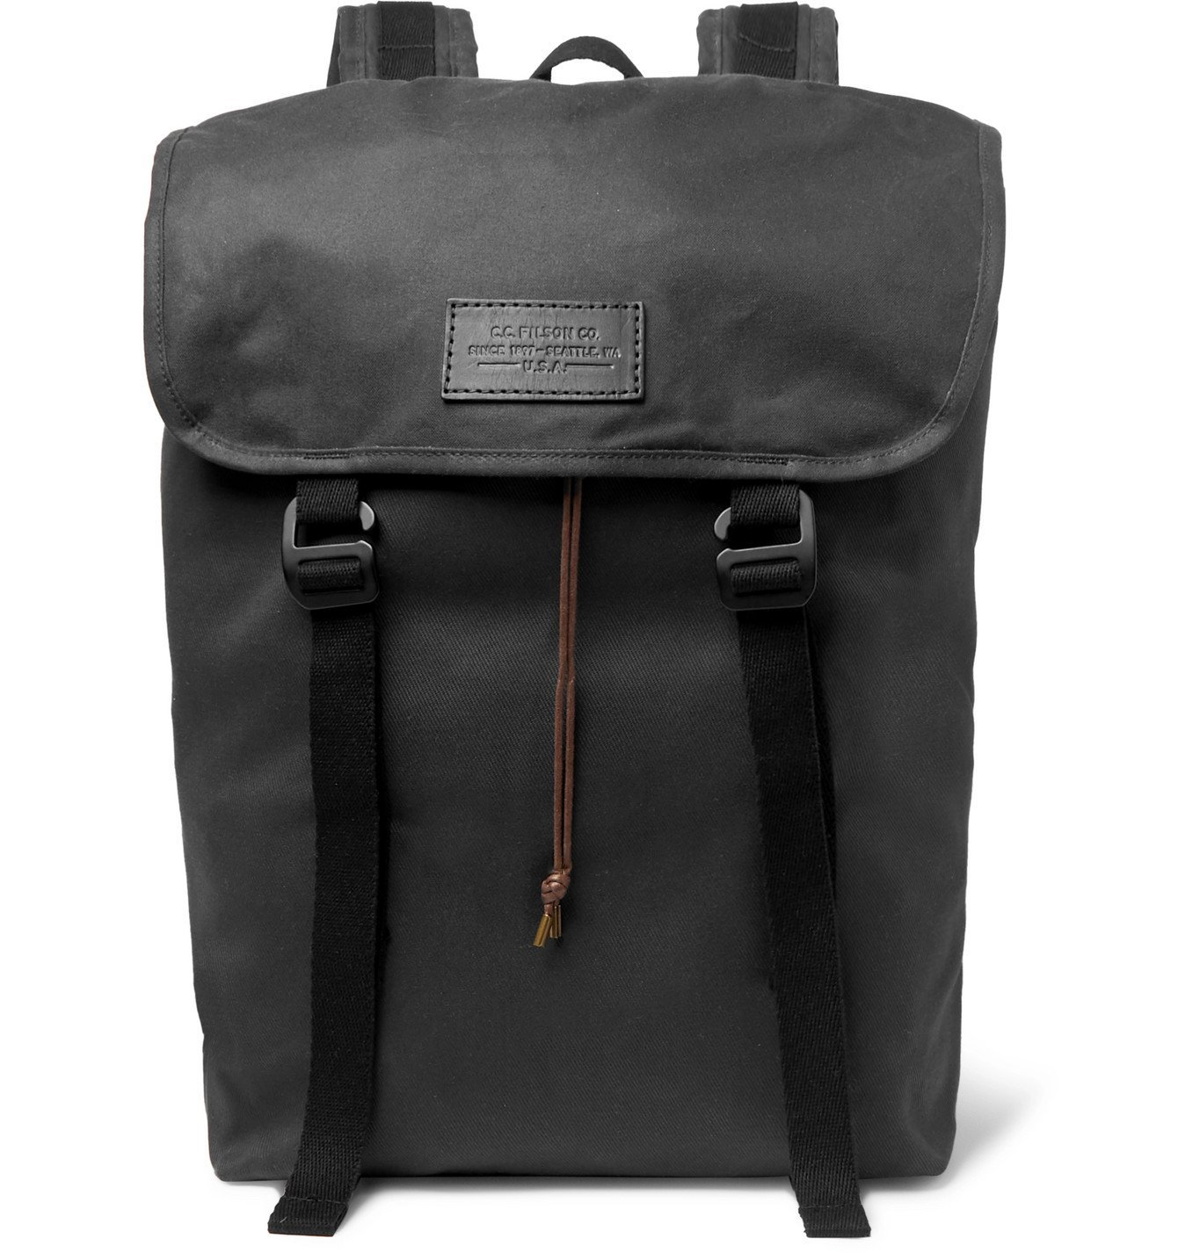 Rugged Twill Backpack - Black